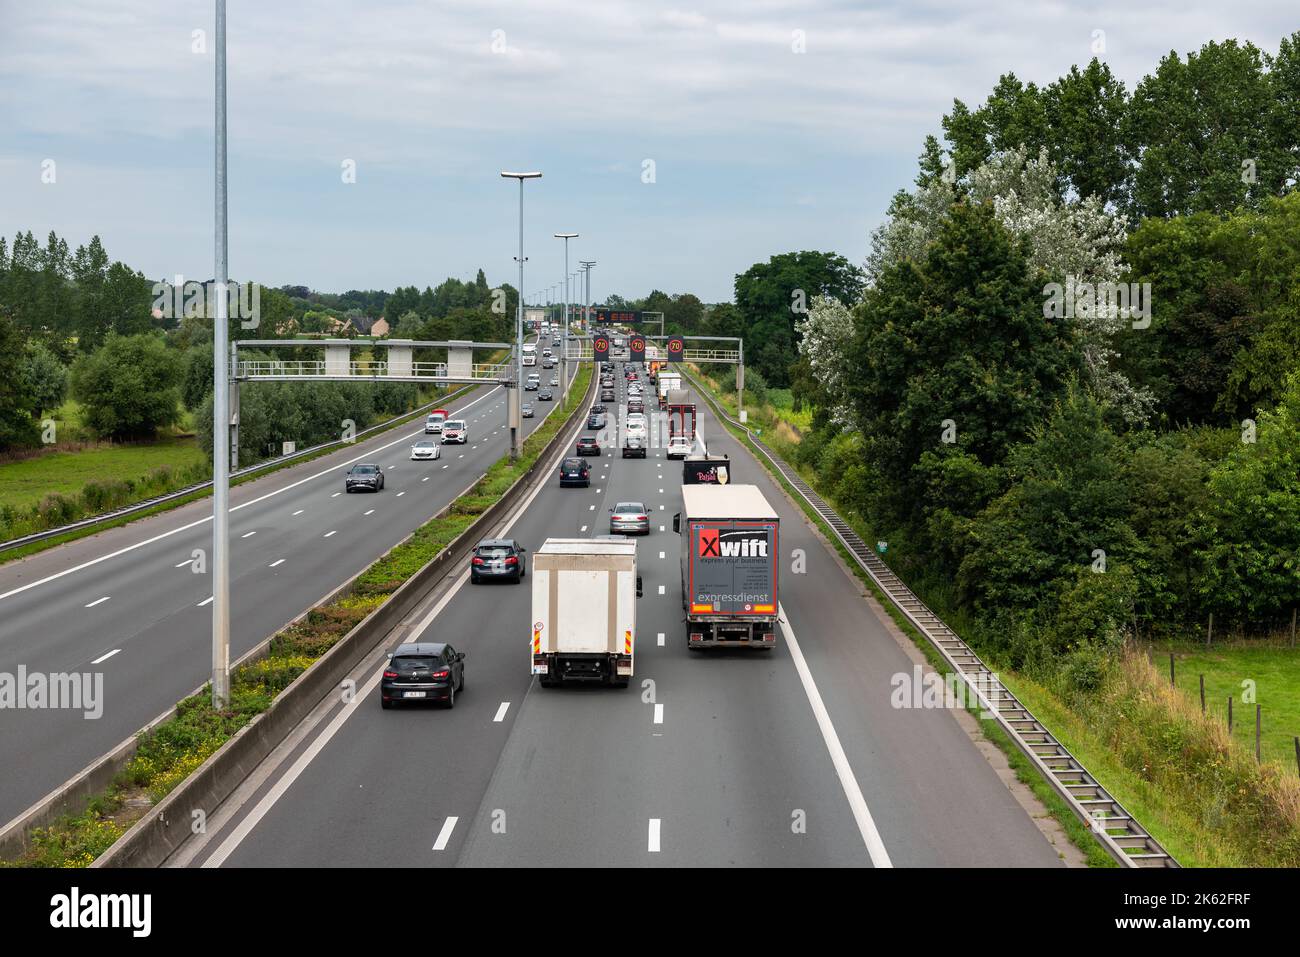 Wetteren, East Flanders Region, Belgium - 07 15 2021 The E40 highway traffic, taken from above Stock Photo